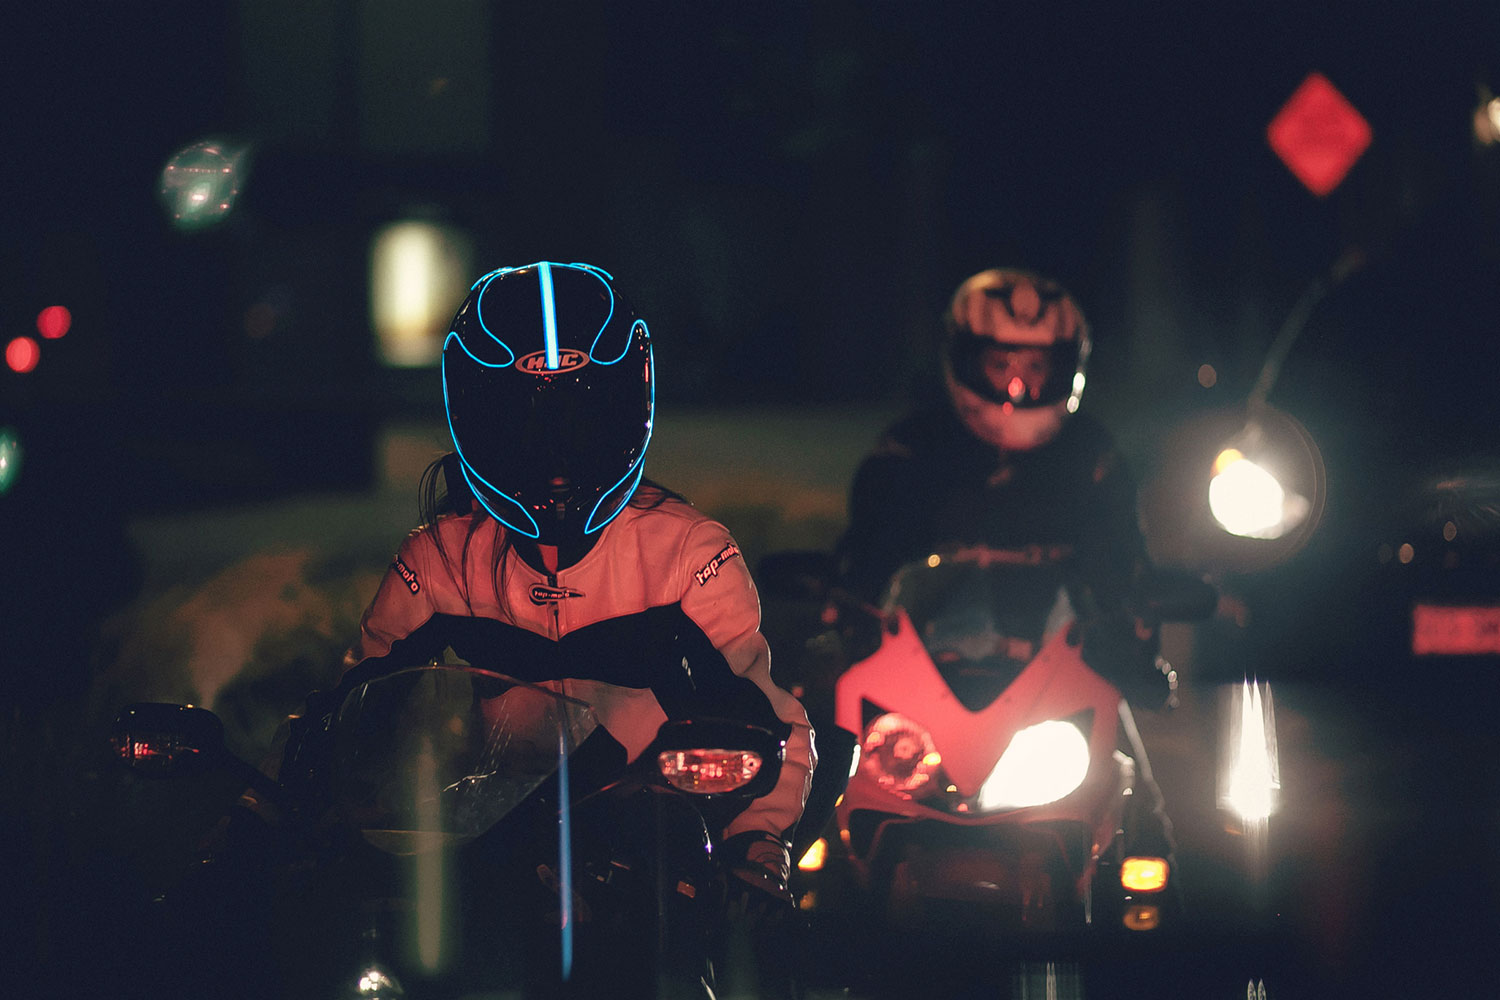 lightmode helmet light kits 004